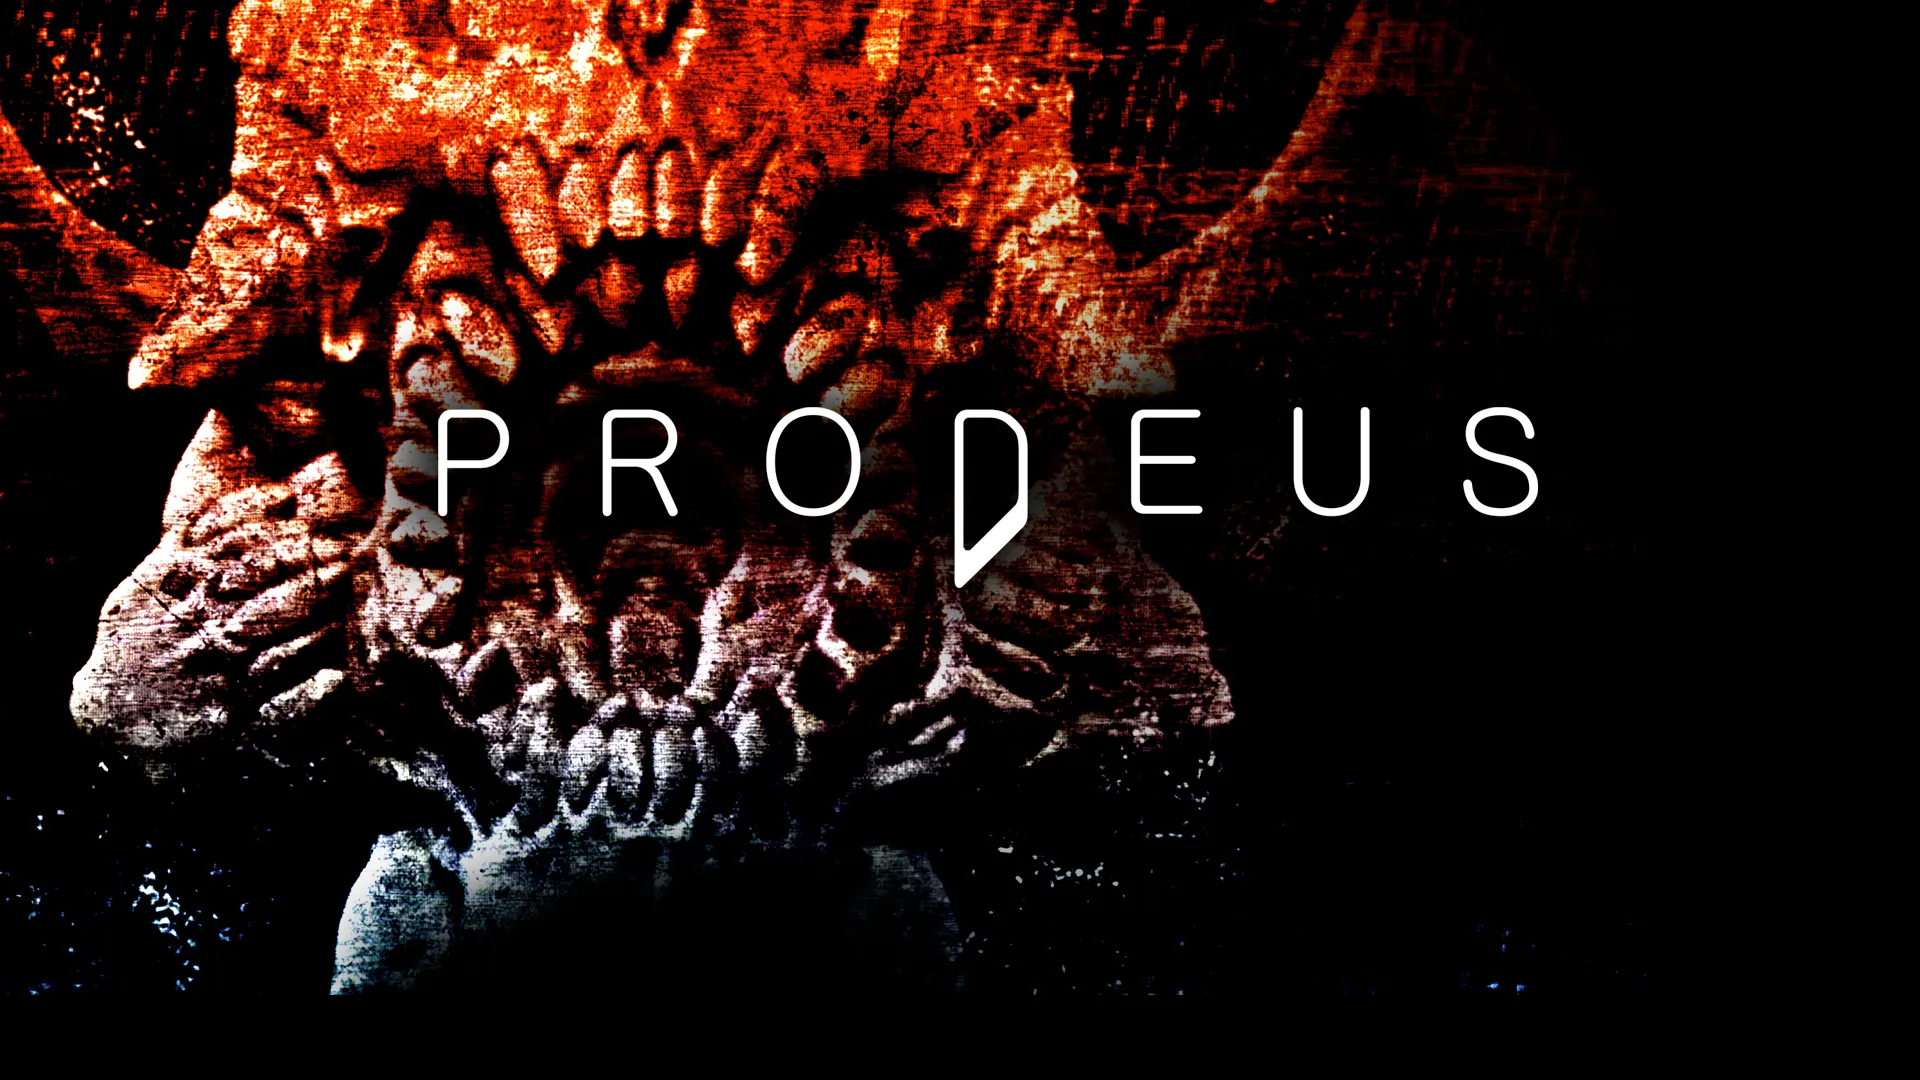 Prodeus : Le Fast FPS à la DOOM sortira le 23 septembre sur PC et consoles